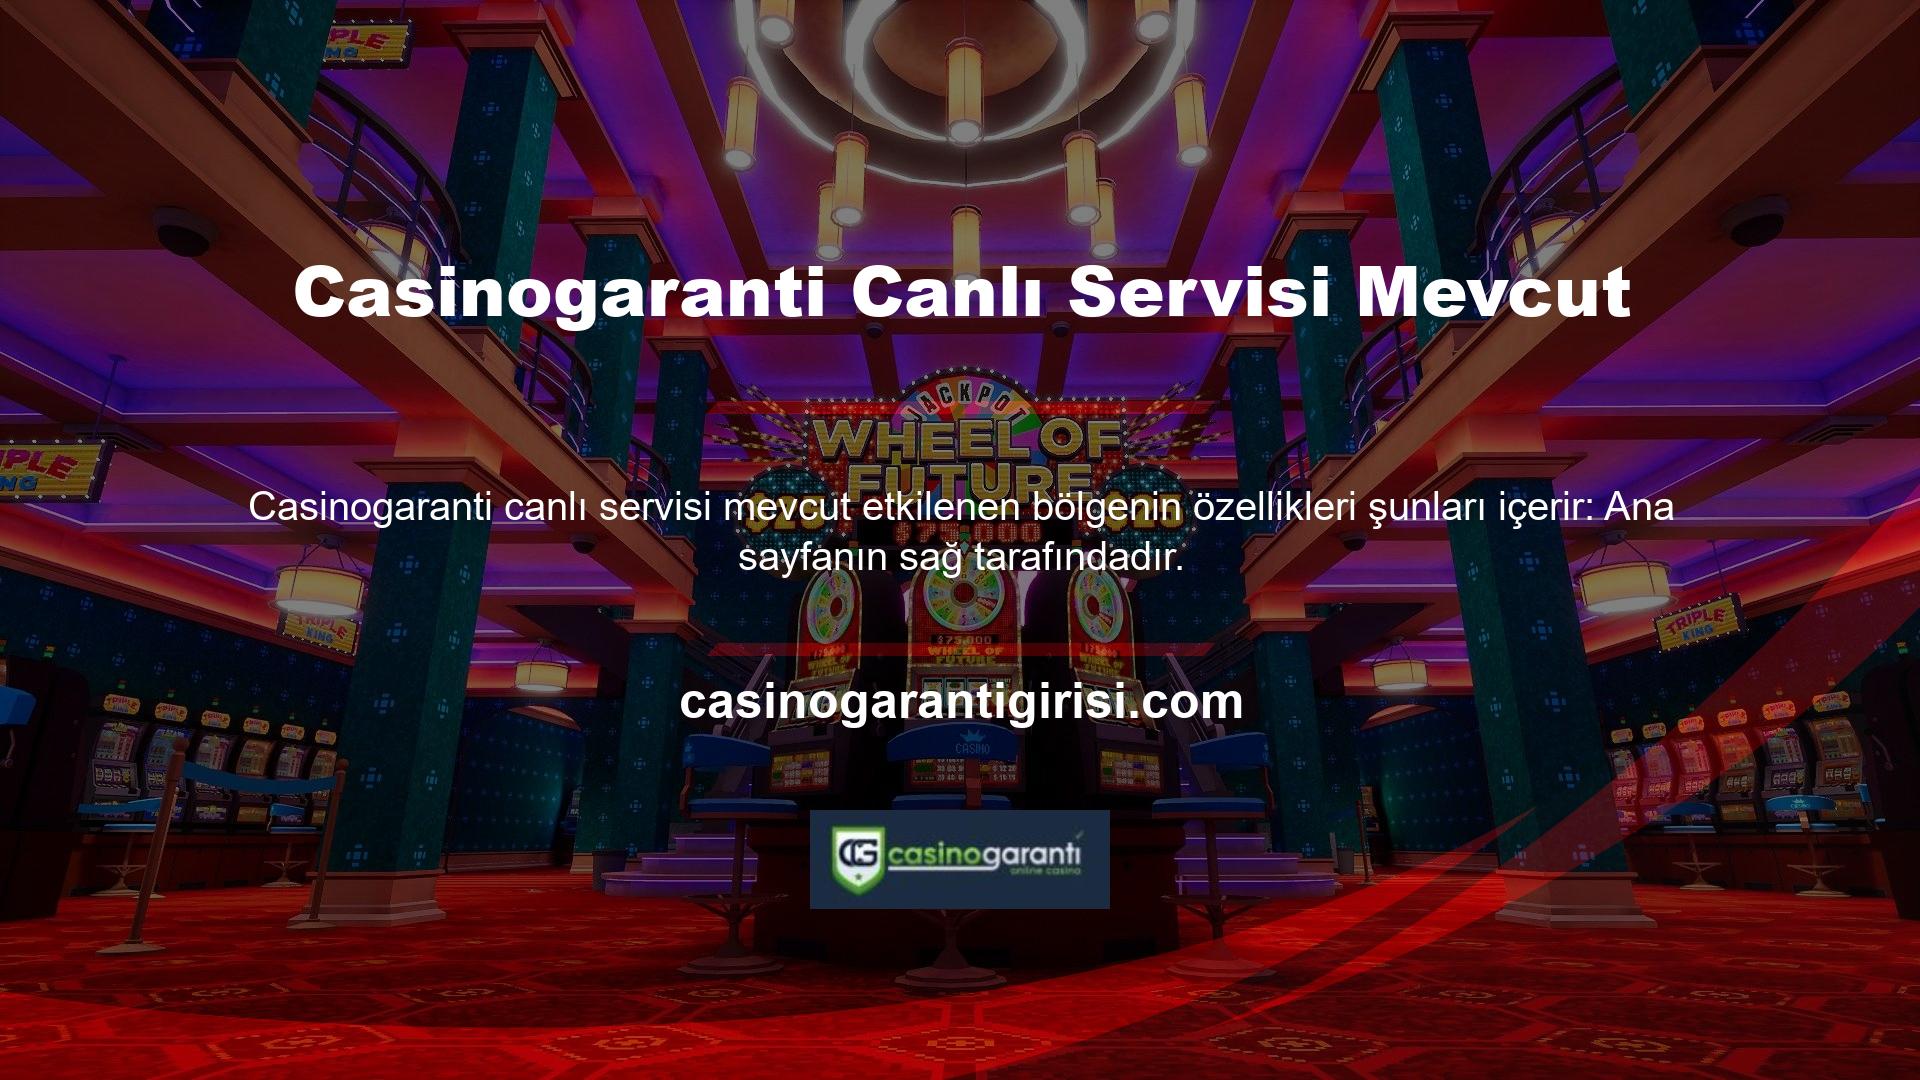 Casinogaranti Canlı Casino Gaming sitesindeki içerikler oldukça iyi bilinen ve güvenilirdir